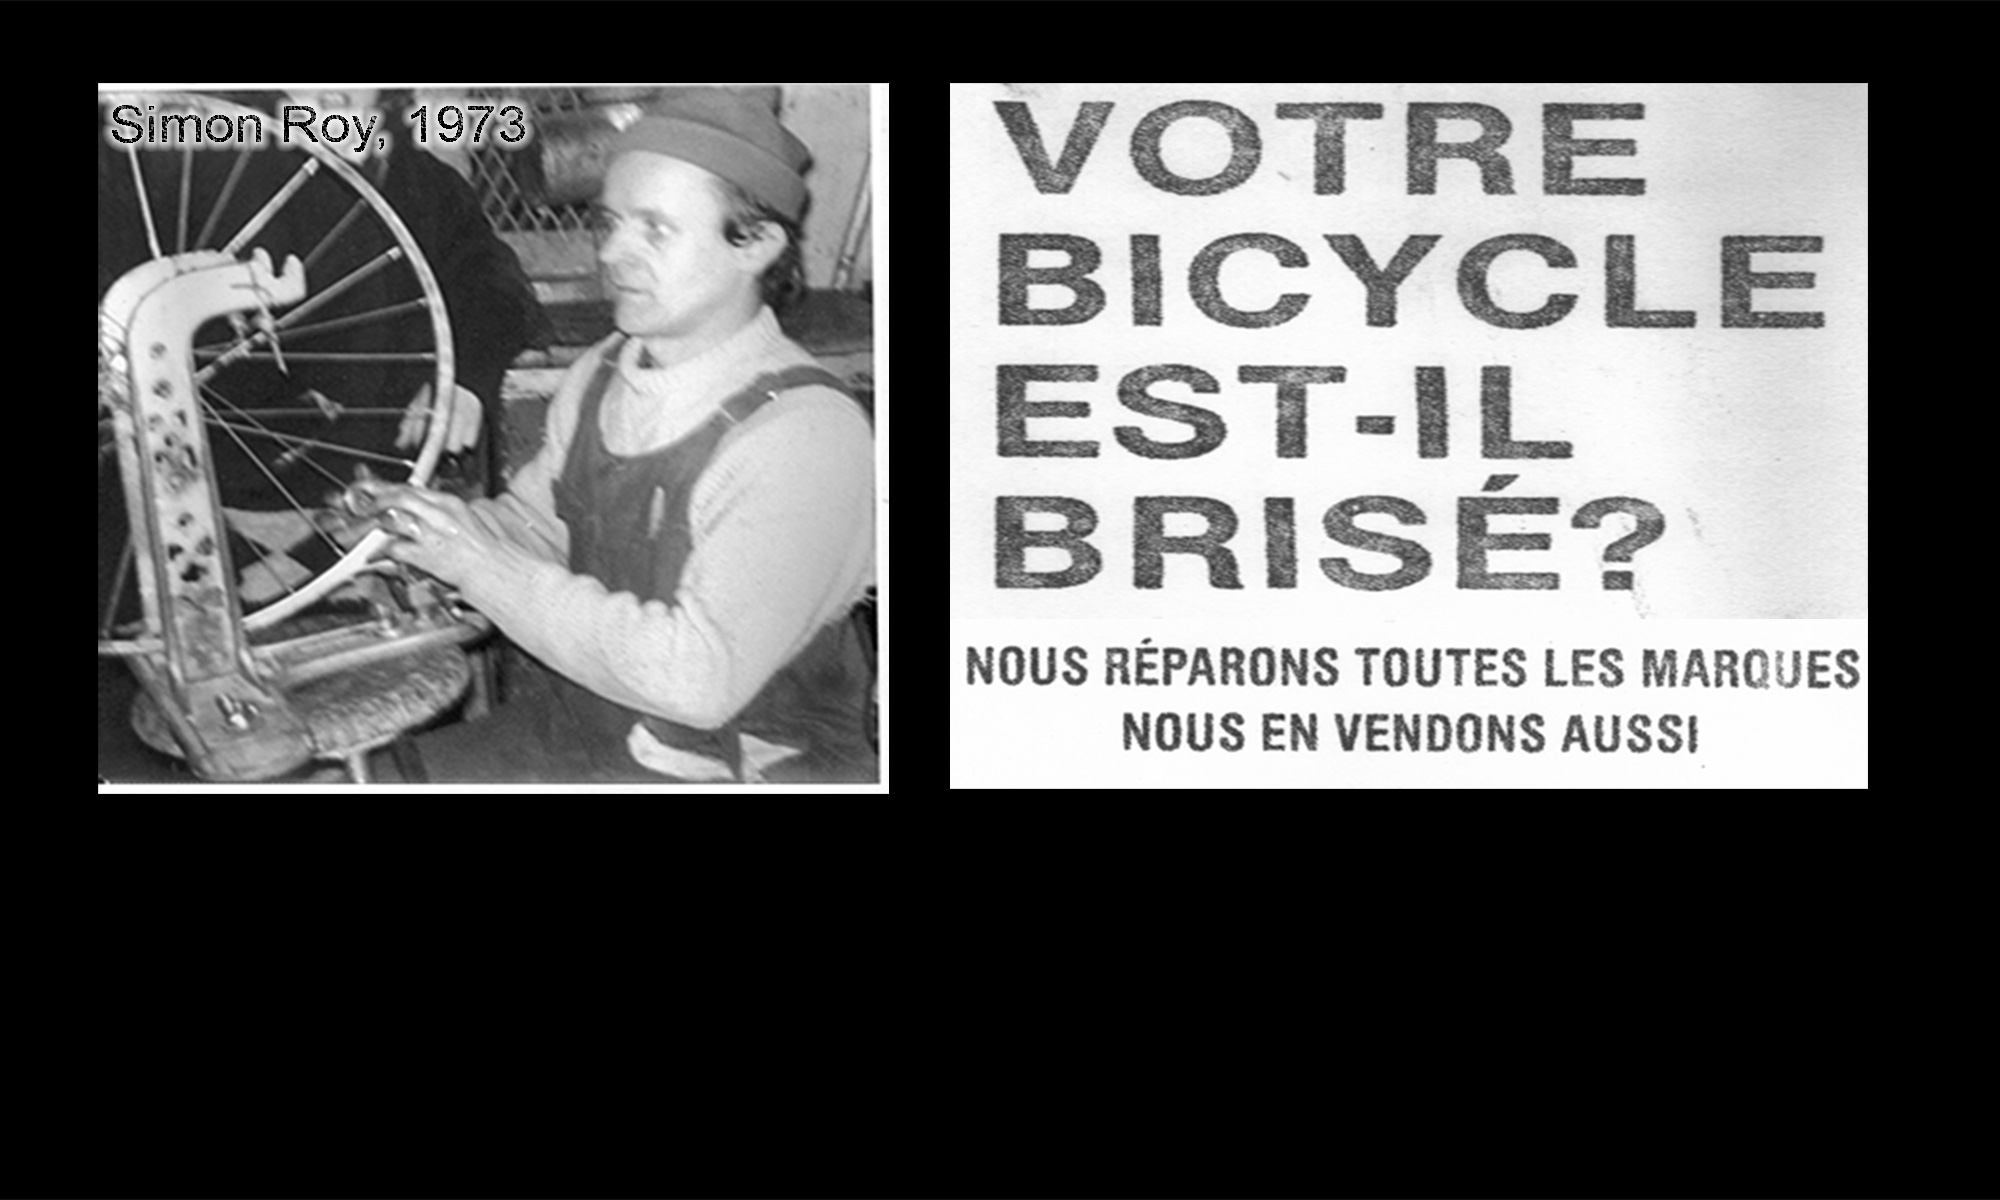 Annonce de La Porte a bicyclette vintage, Simon Roy 1973